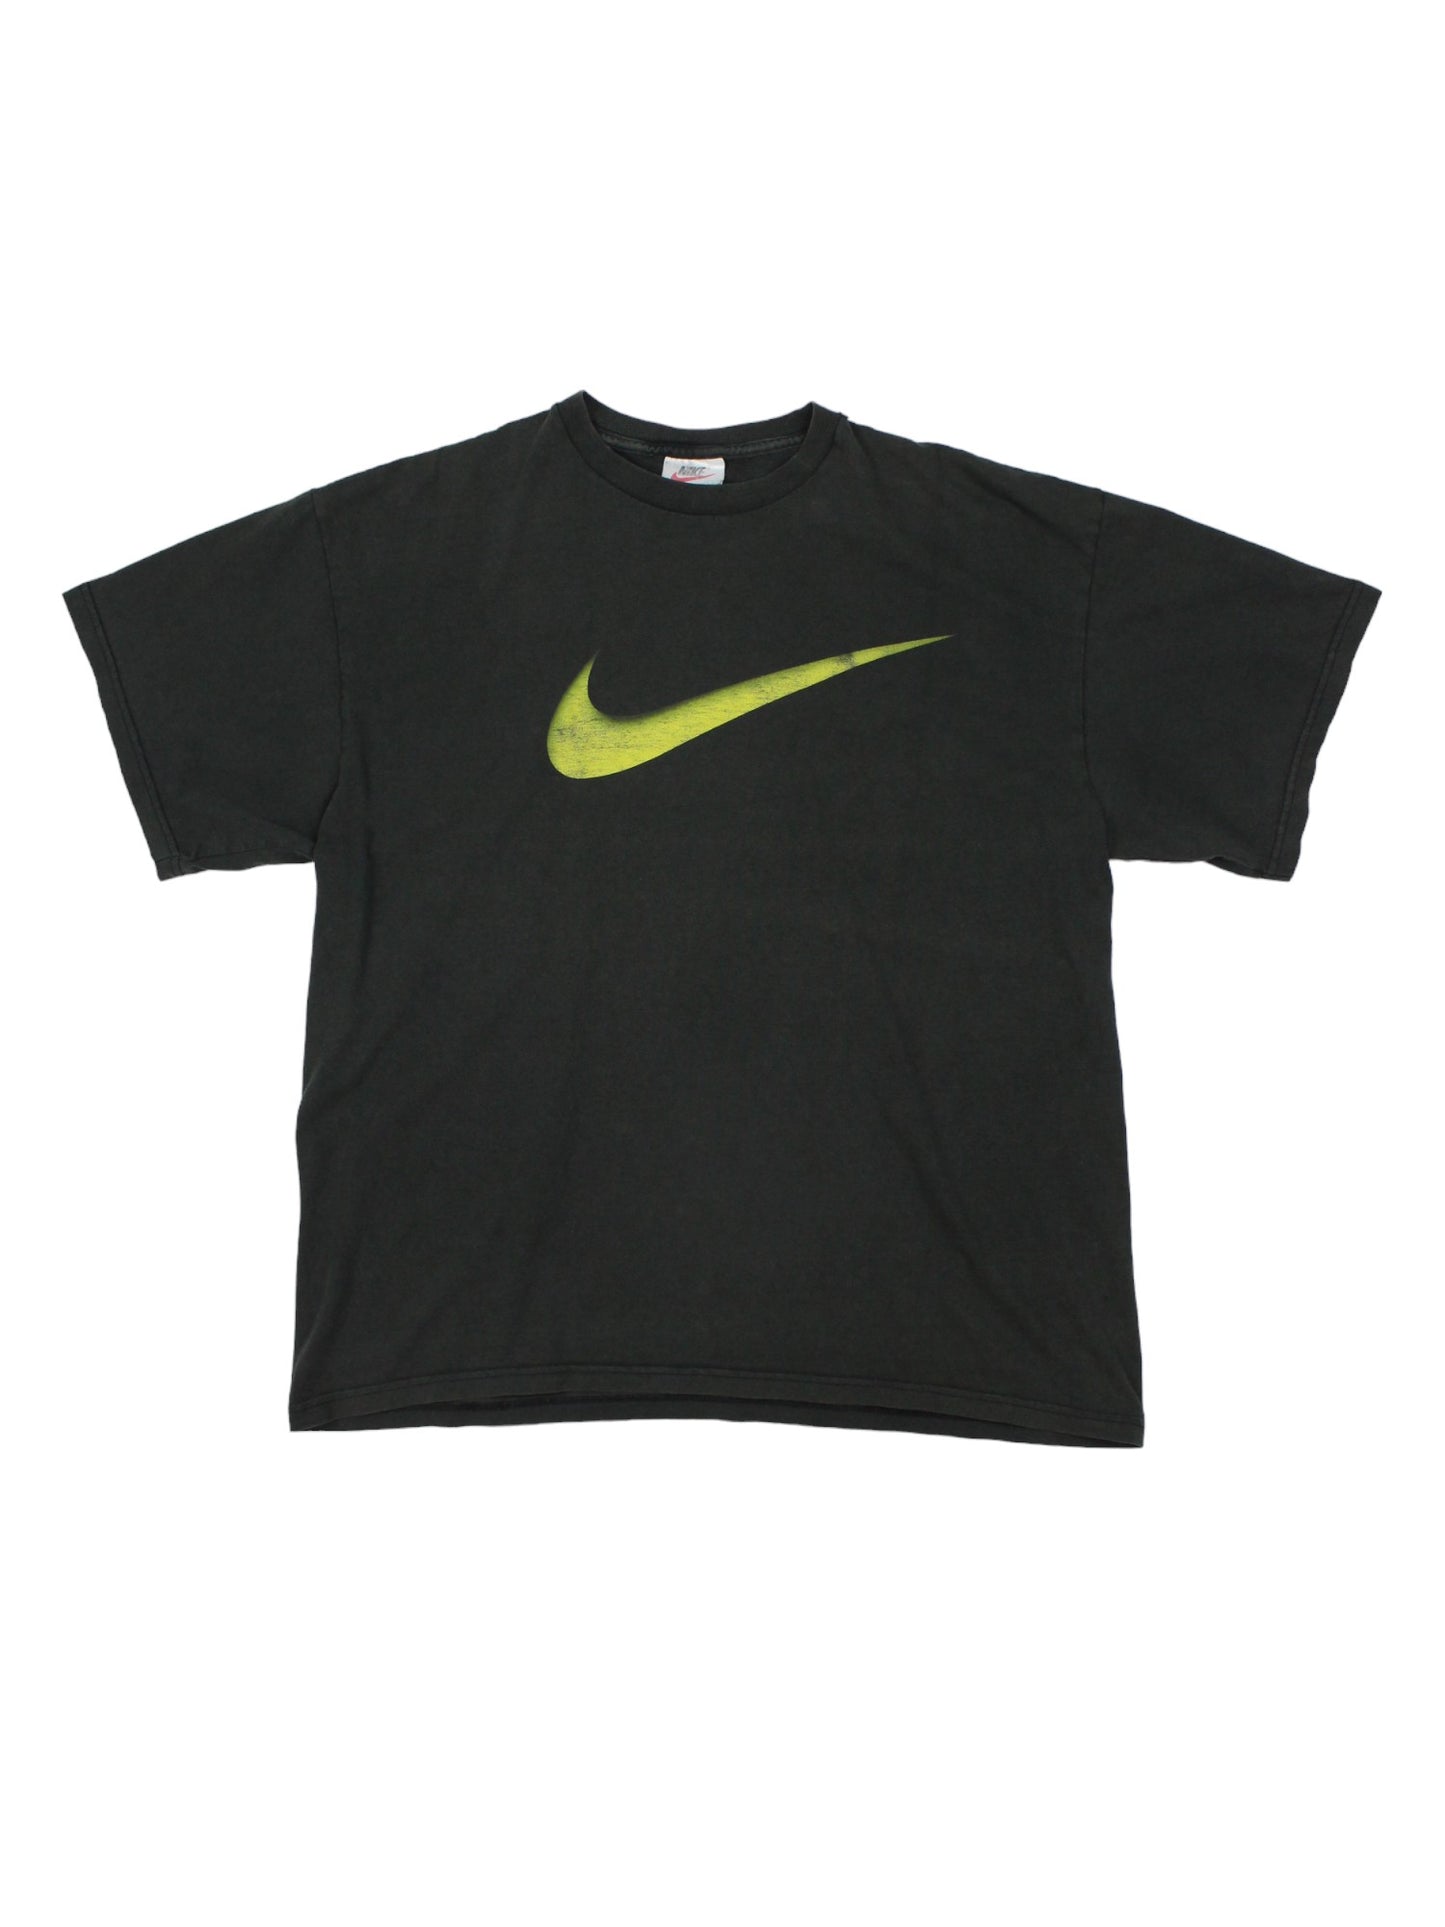 90s Nike Black T-Shirt (S)